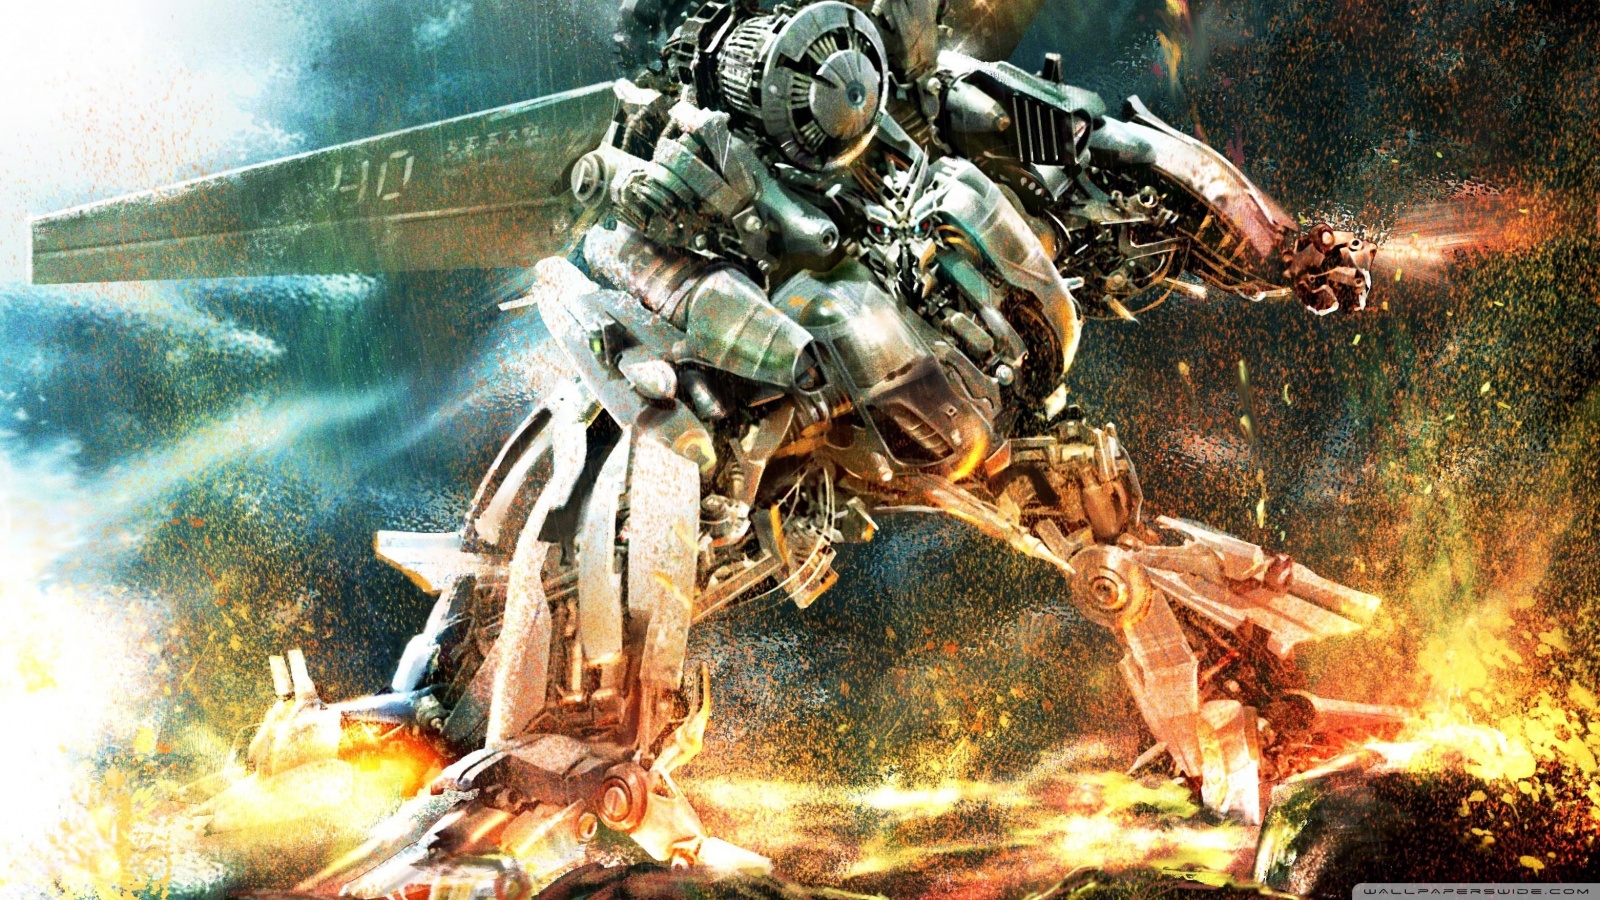 fondo de pantalla de robots de guerra,juego de acción y aventura,juego de pc,juegos,personaje de ficción,cg artwork